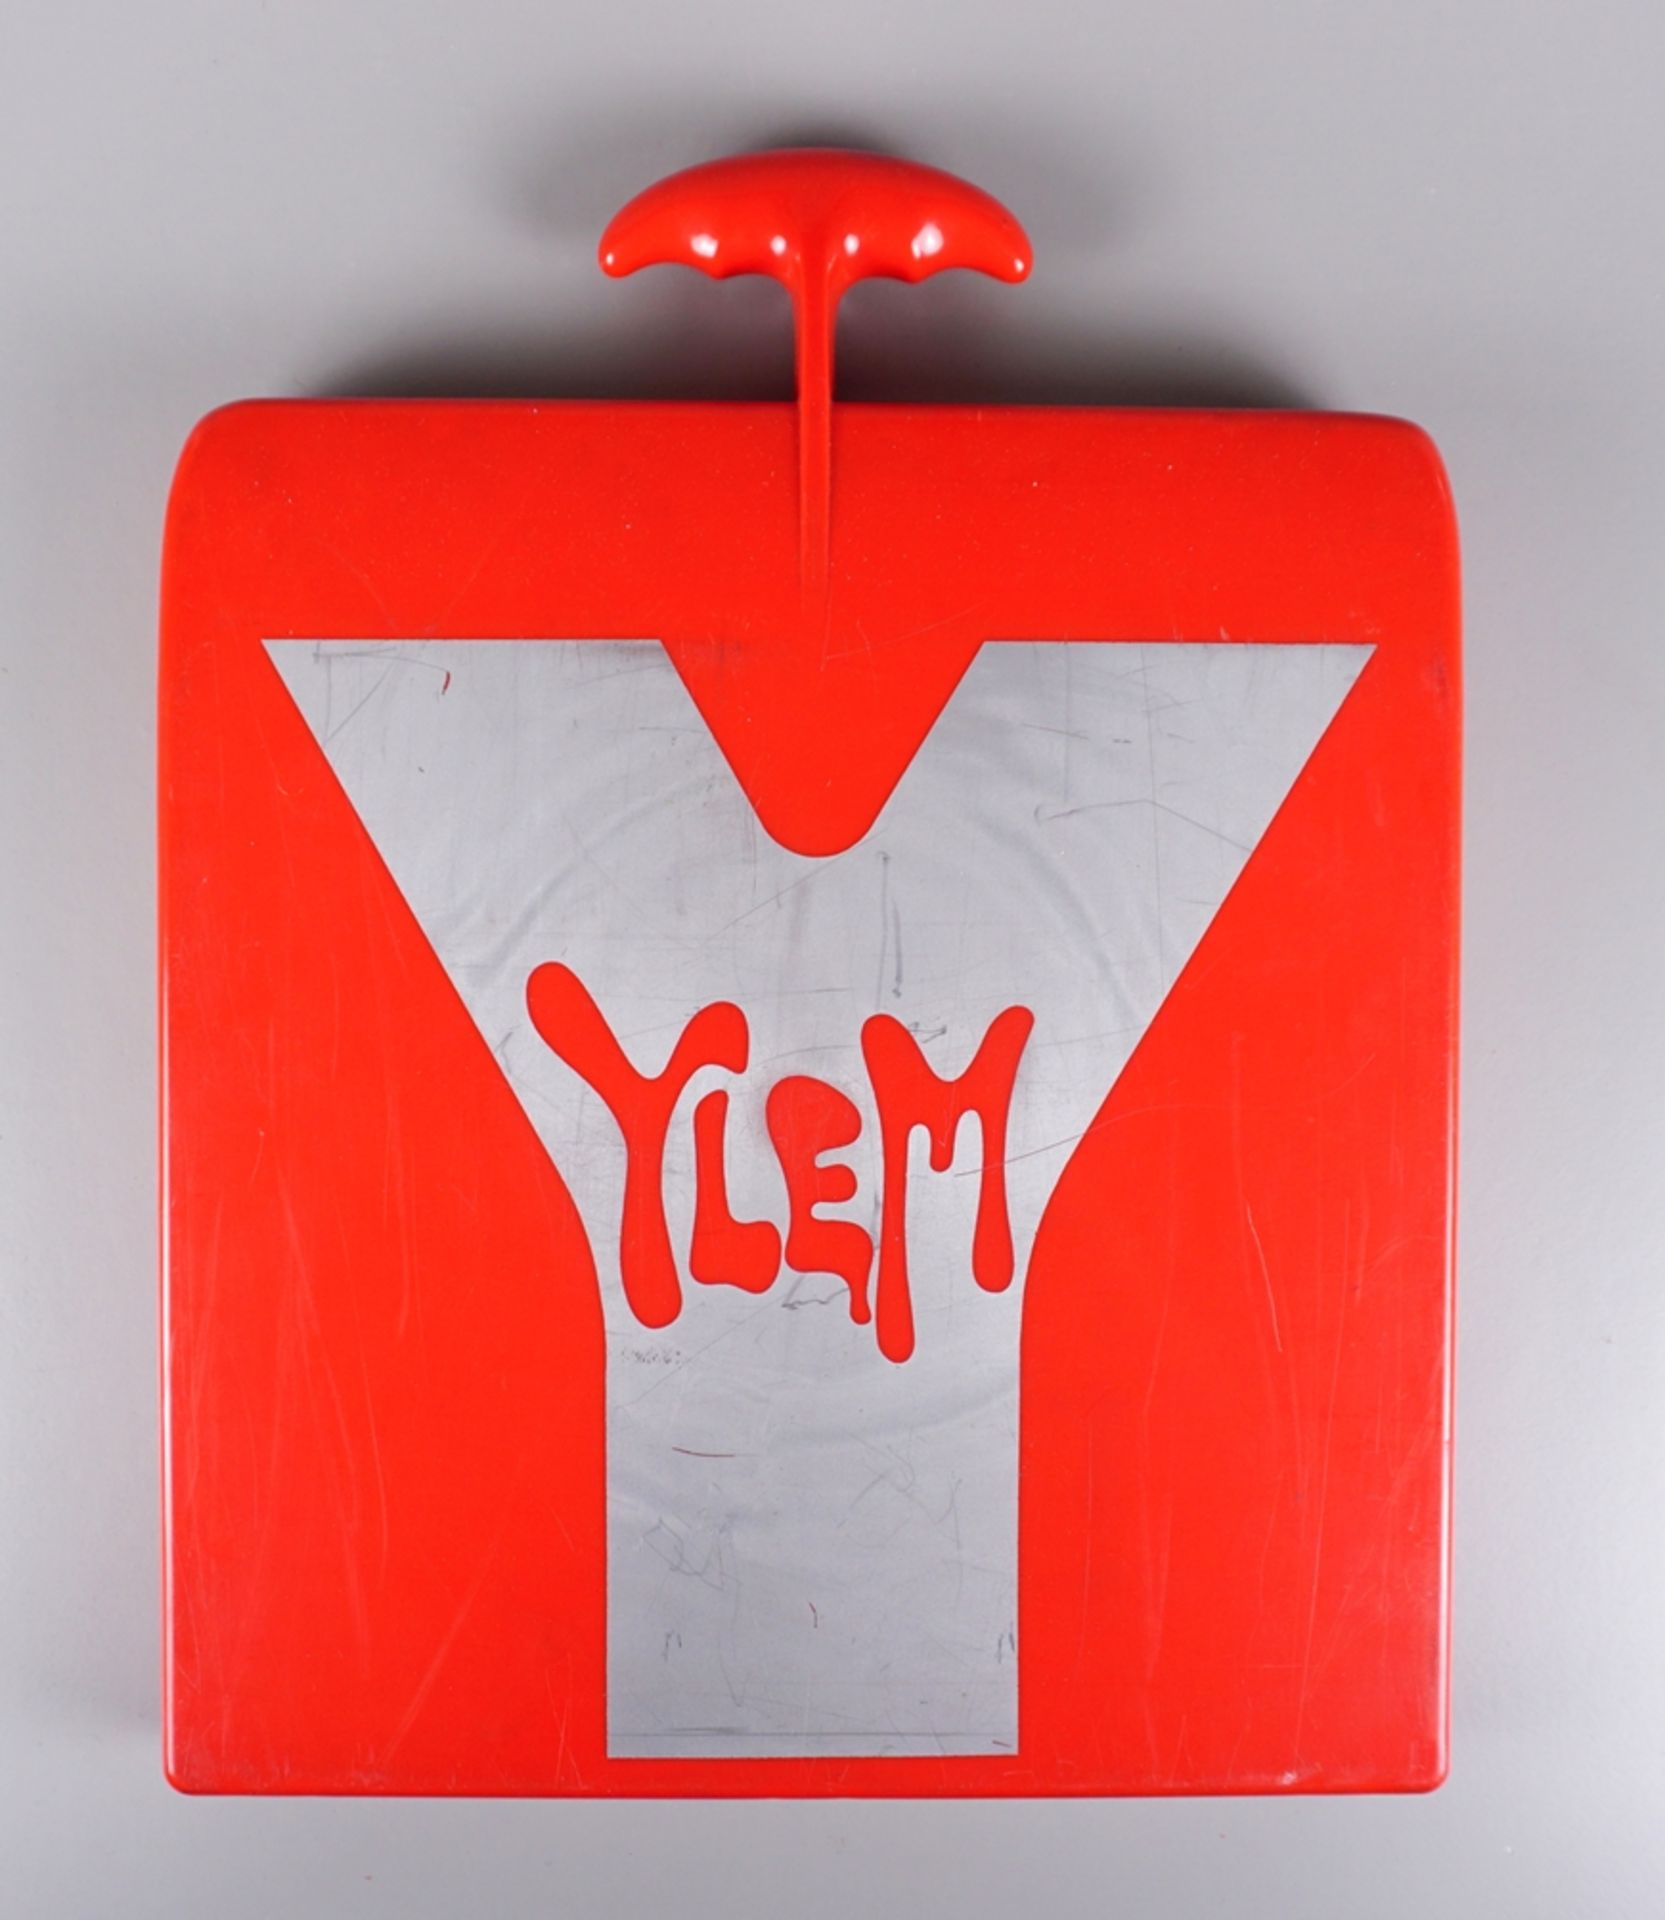 Luigi Colani, YLEM, 1971, Kassette mit Design-Entwürfen